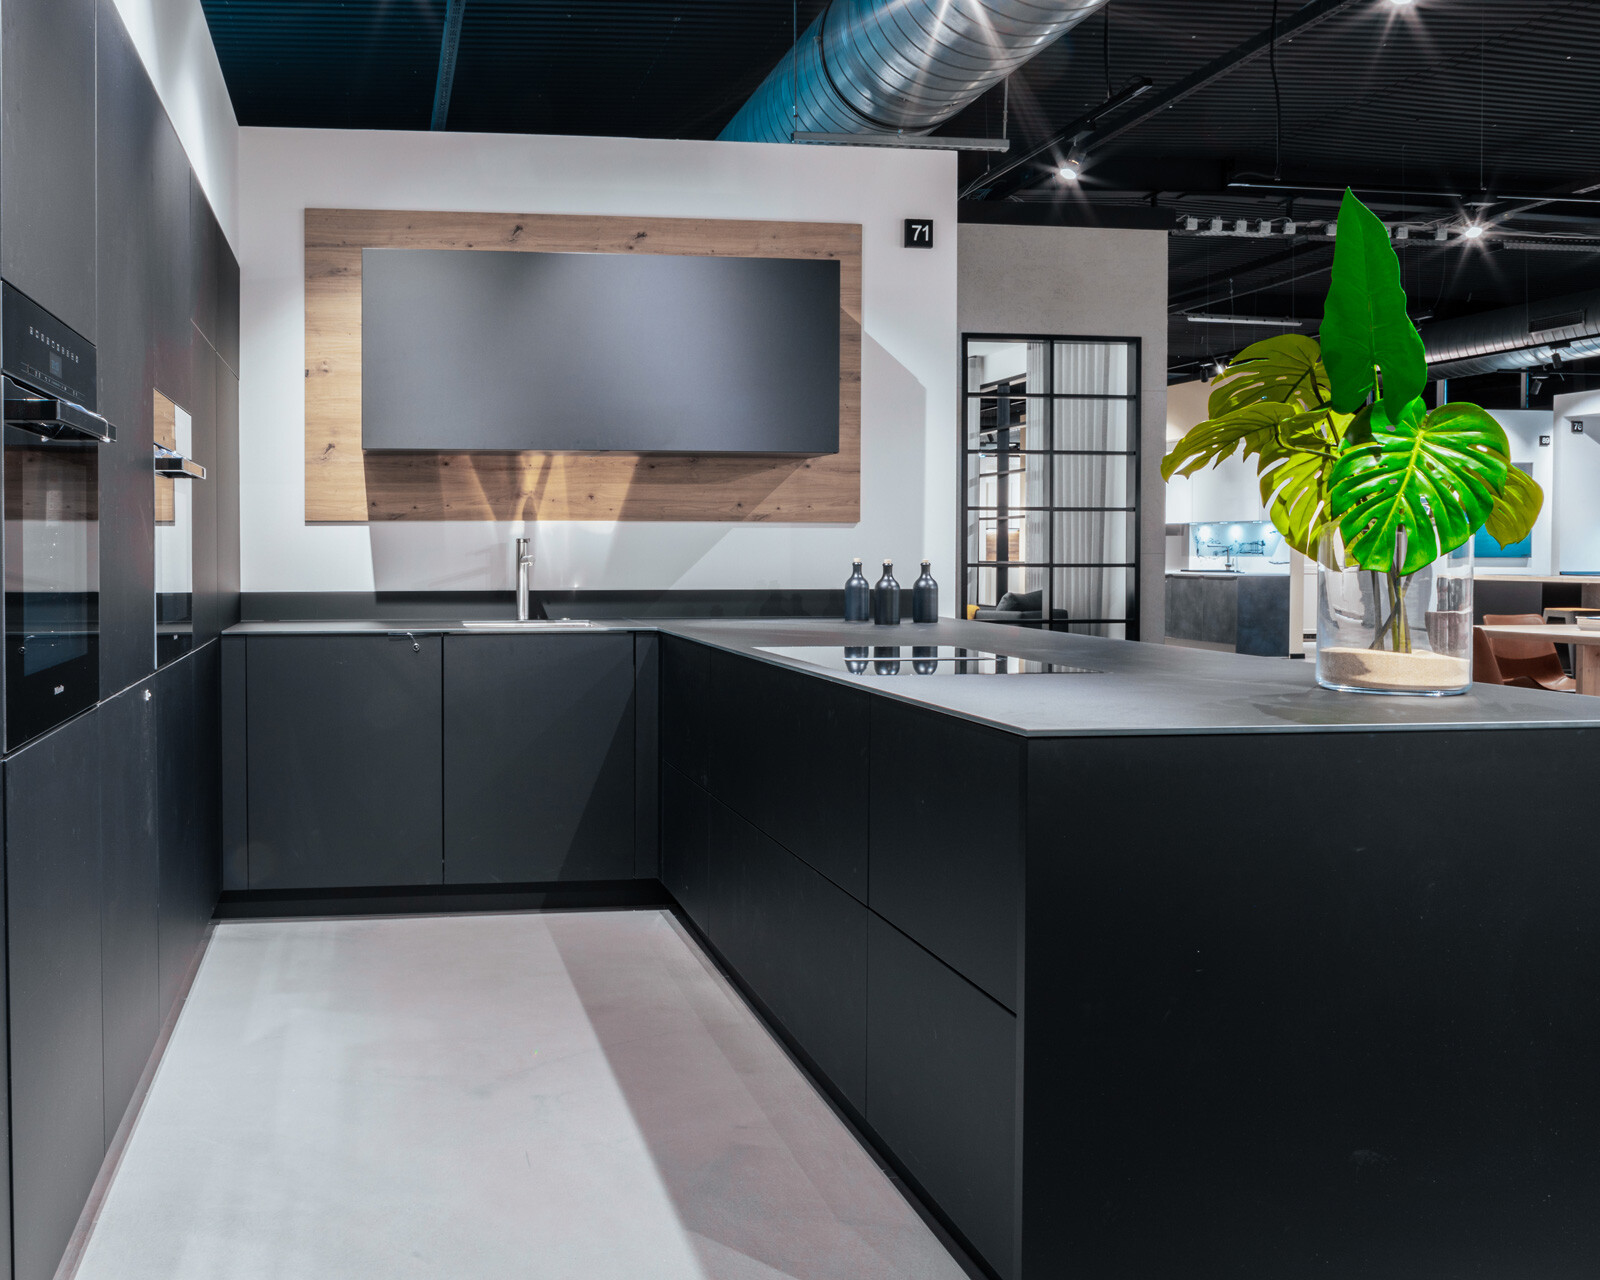 Kitchen studio Dahlewitz, buy kitchen Cologne, modern kitchen studio